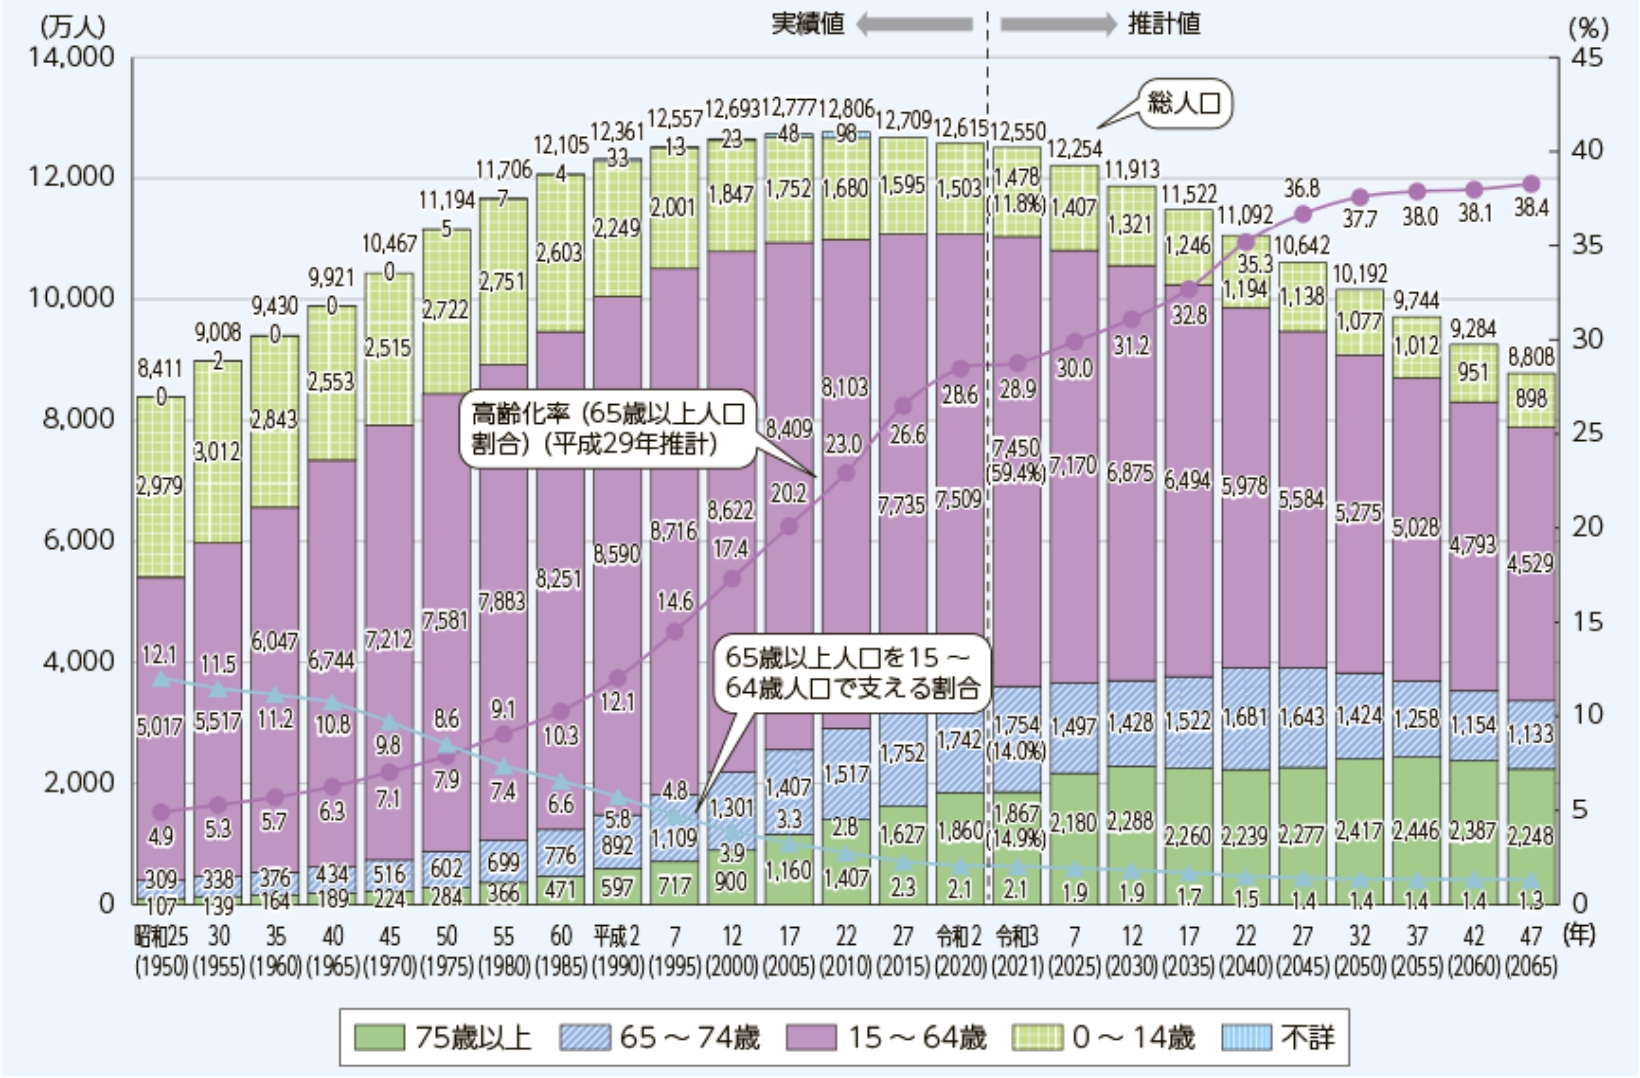 生産年齢人口のグラフ